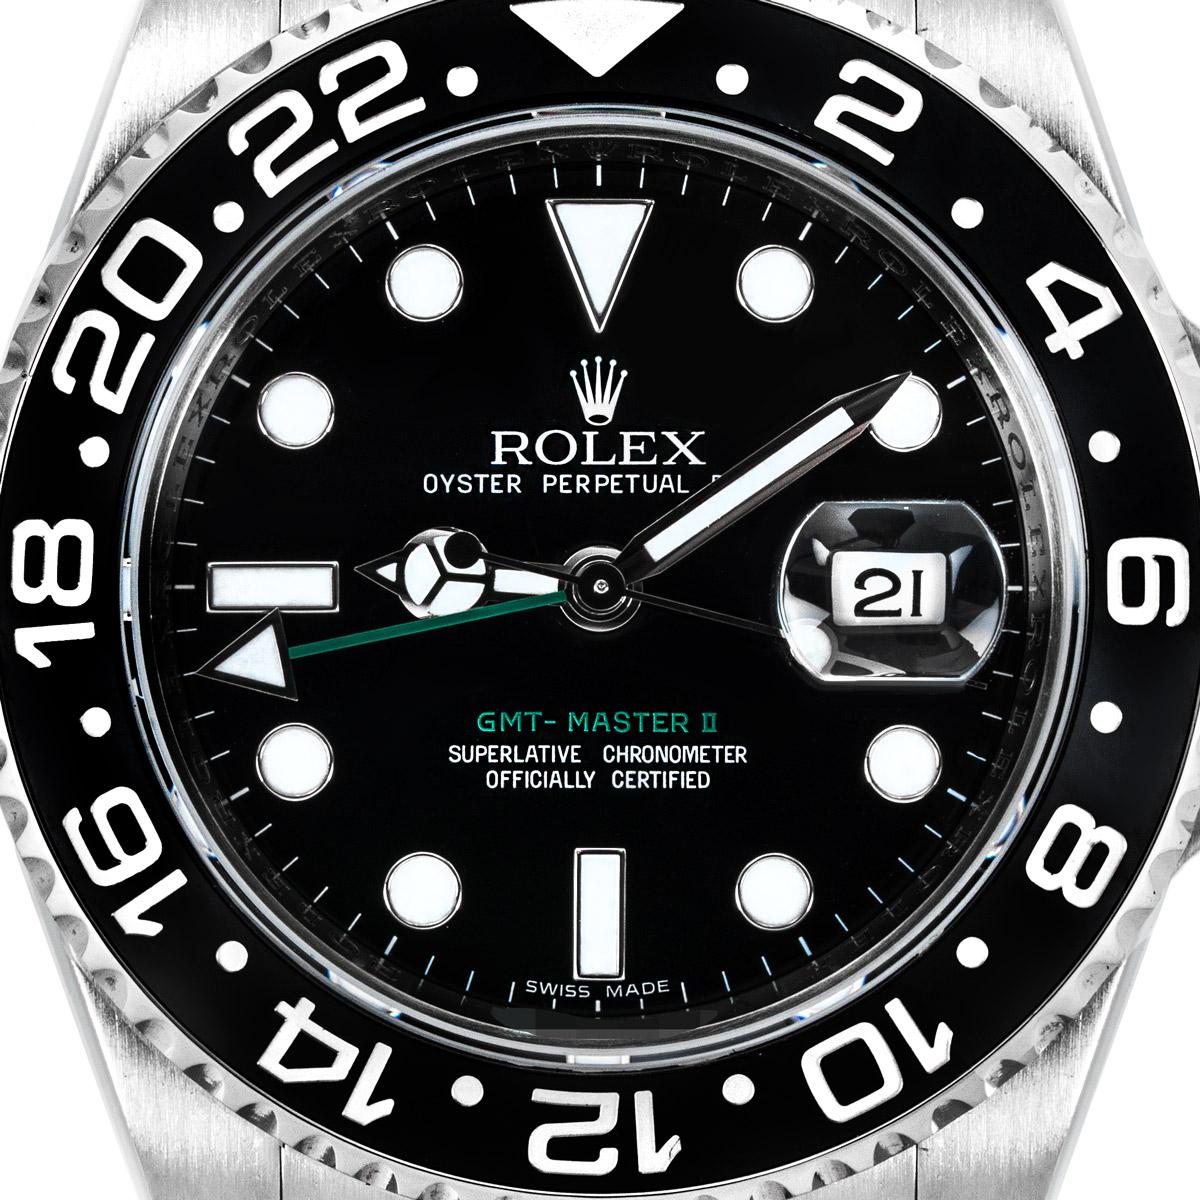 Eine Herren GMT-Master II aus Edelstahl von Rolex. Mit schwarzem Zifferblatt, Datumsfenster und grünem Sekundenzeiger für die Zeitzone. Die bidirektional drehbare Lünette verfügt über eine 24-Stunden-Anzeige auf dem Keramikeinsatz.

Ausgestattet mit